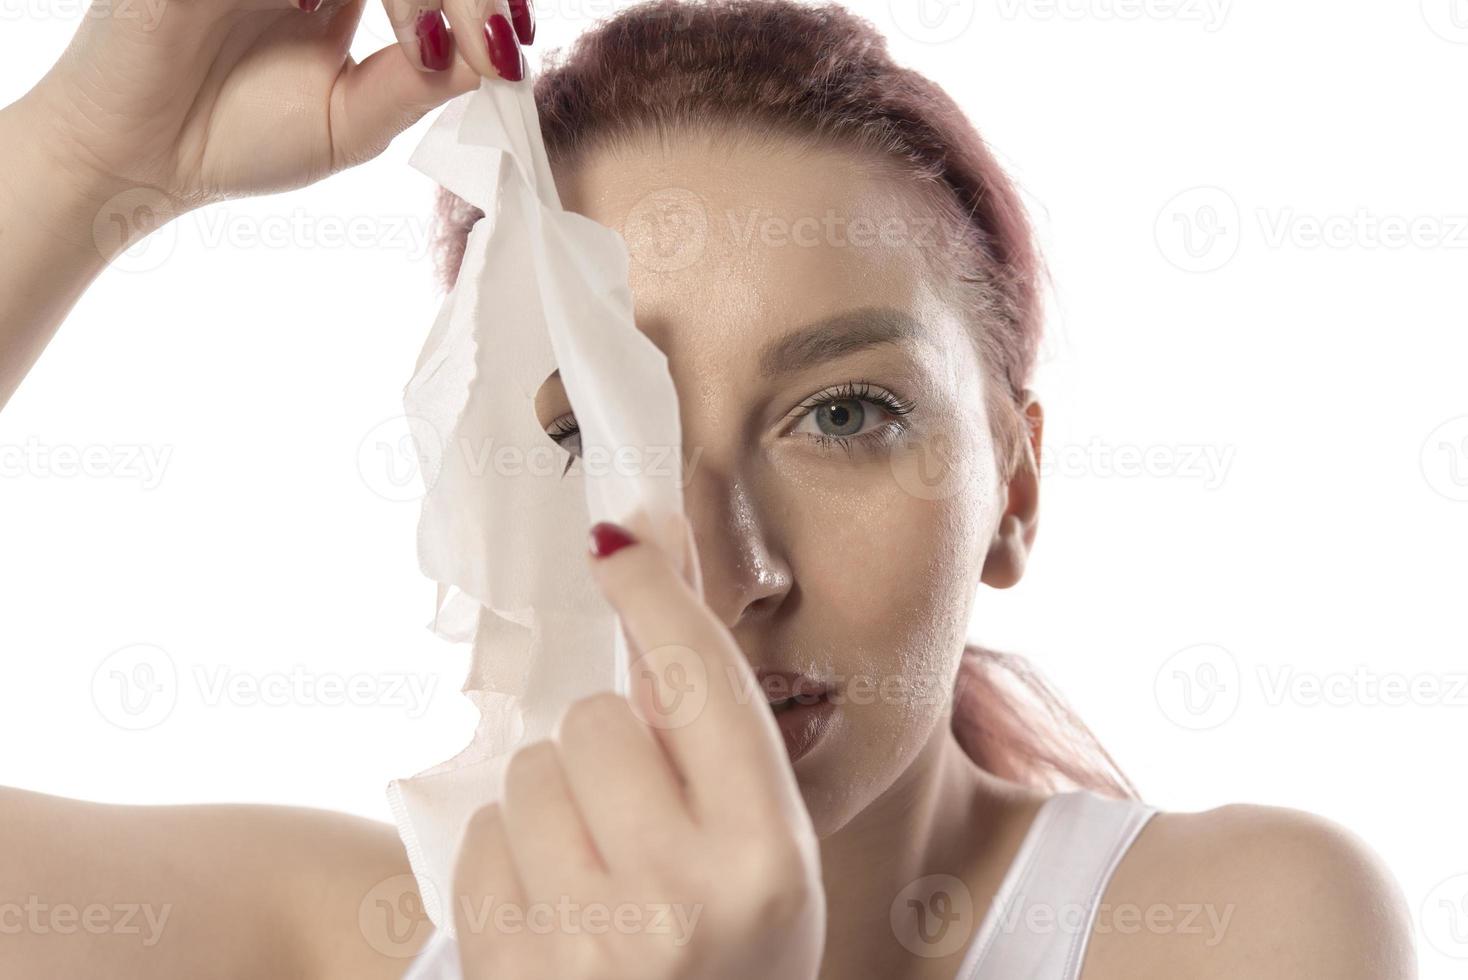 tratamientos faciales y de belleza. mujer con una mascarilla hidratante en la cara aislada de fondo blanco foto